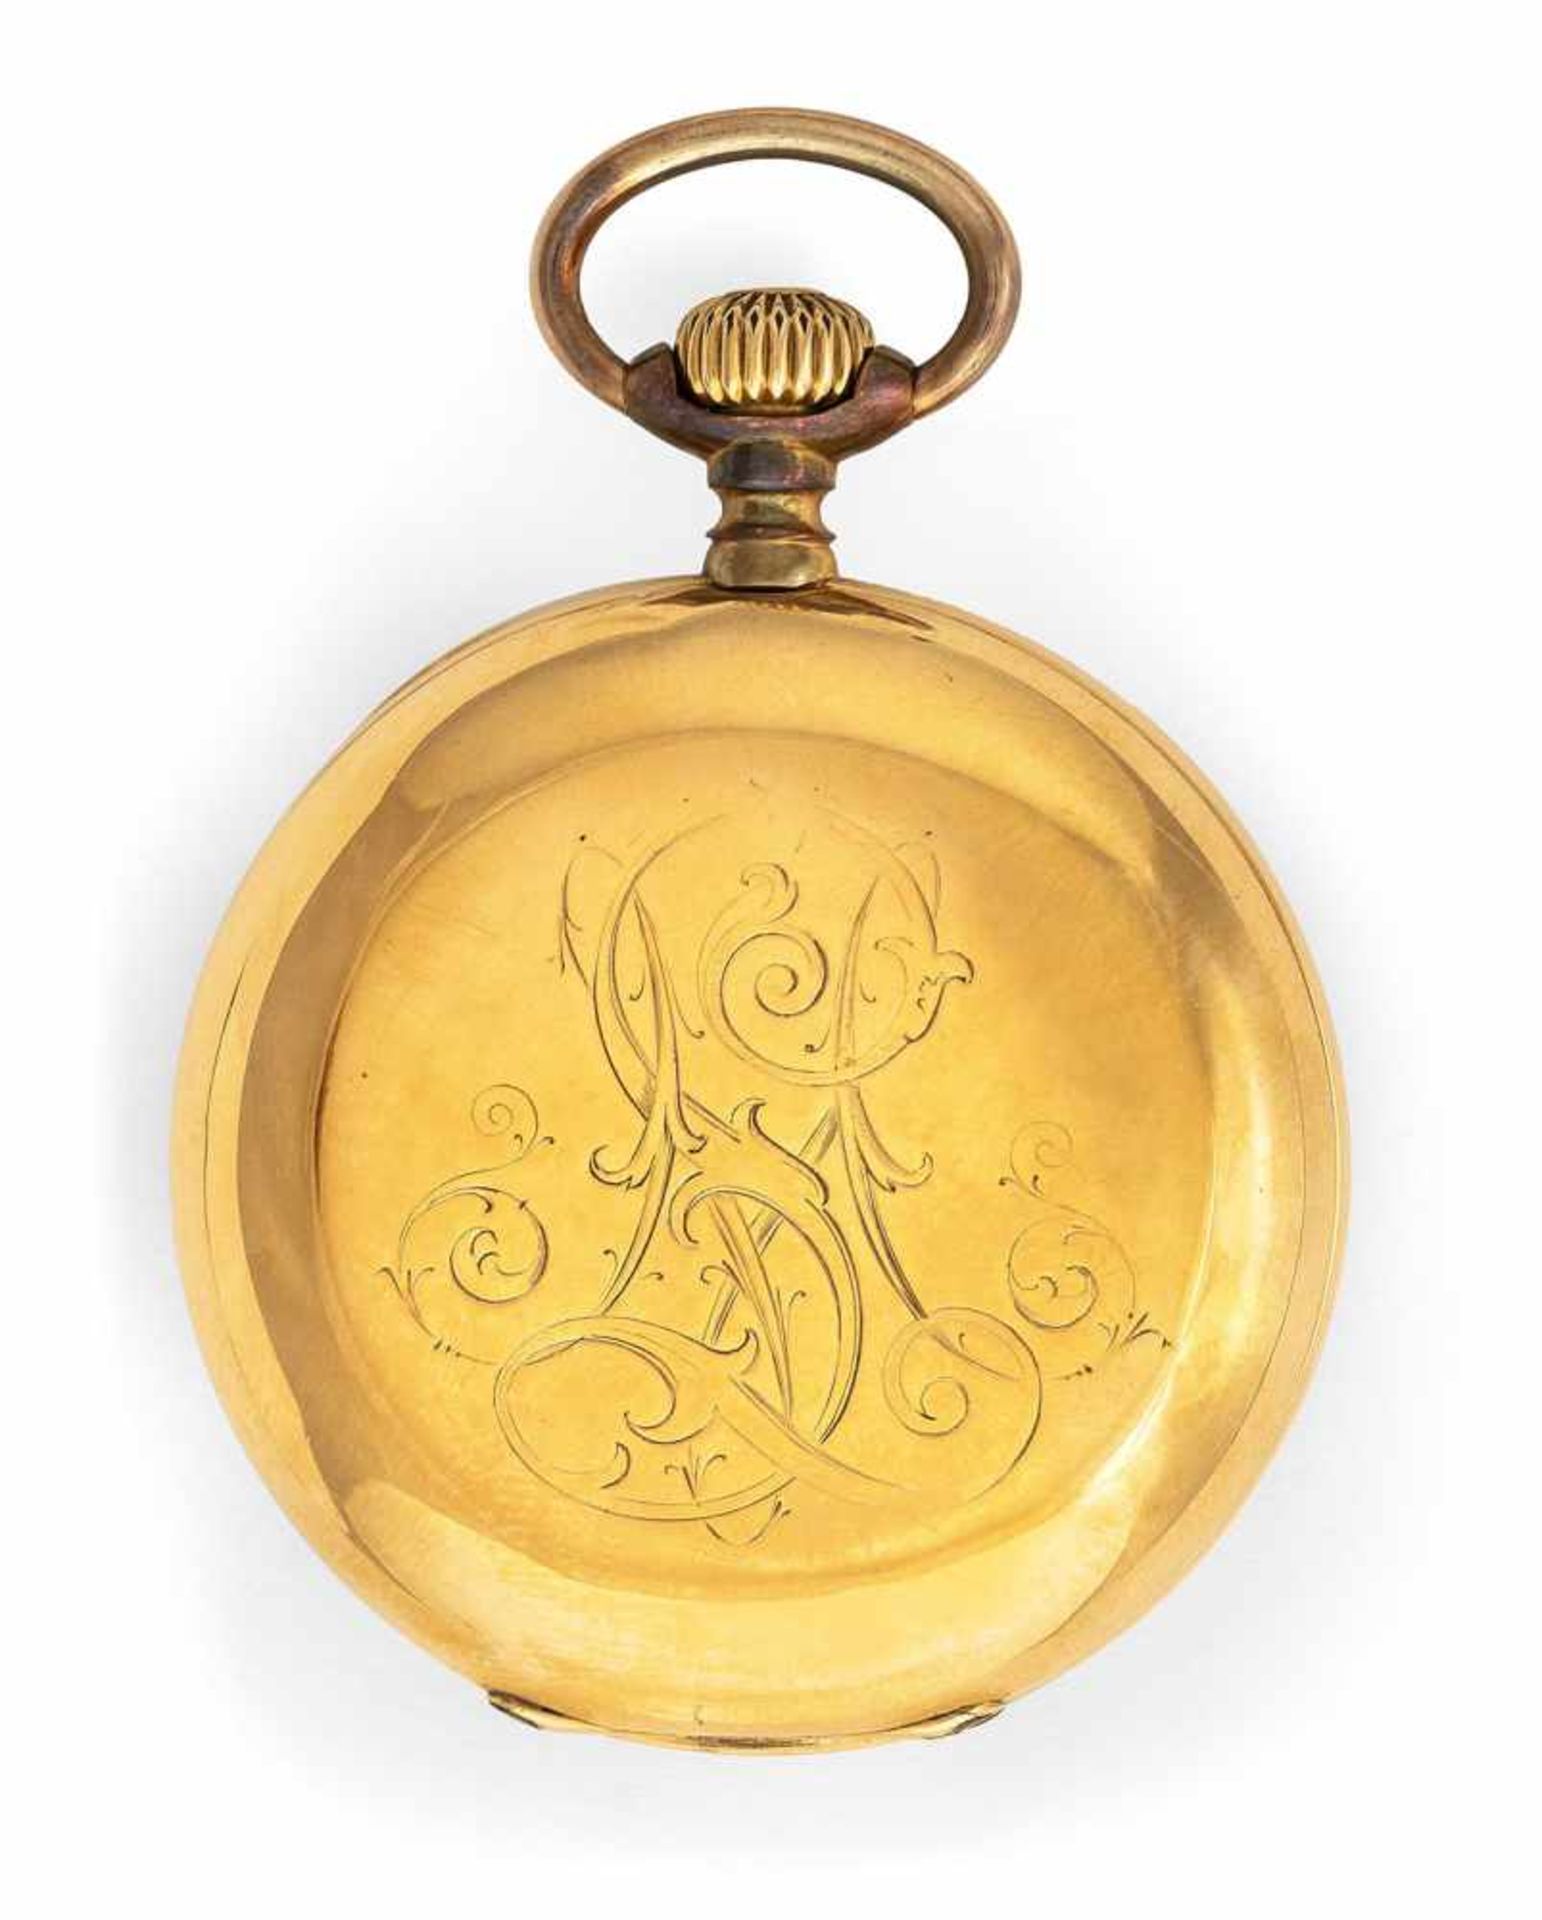 A gold savonette hunter pocket watch, signed A. Lange & Söhne Glashütte B. Dresden 30539, c. 1890. - Image 4 of 4